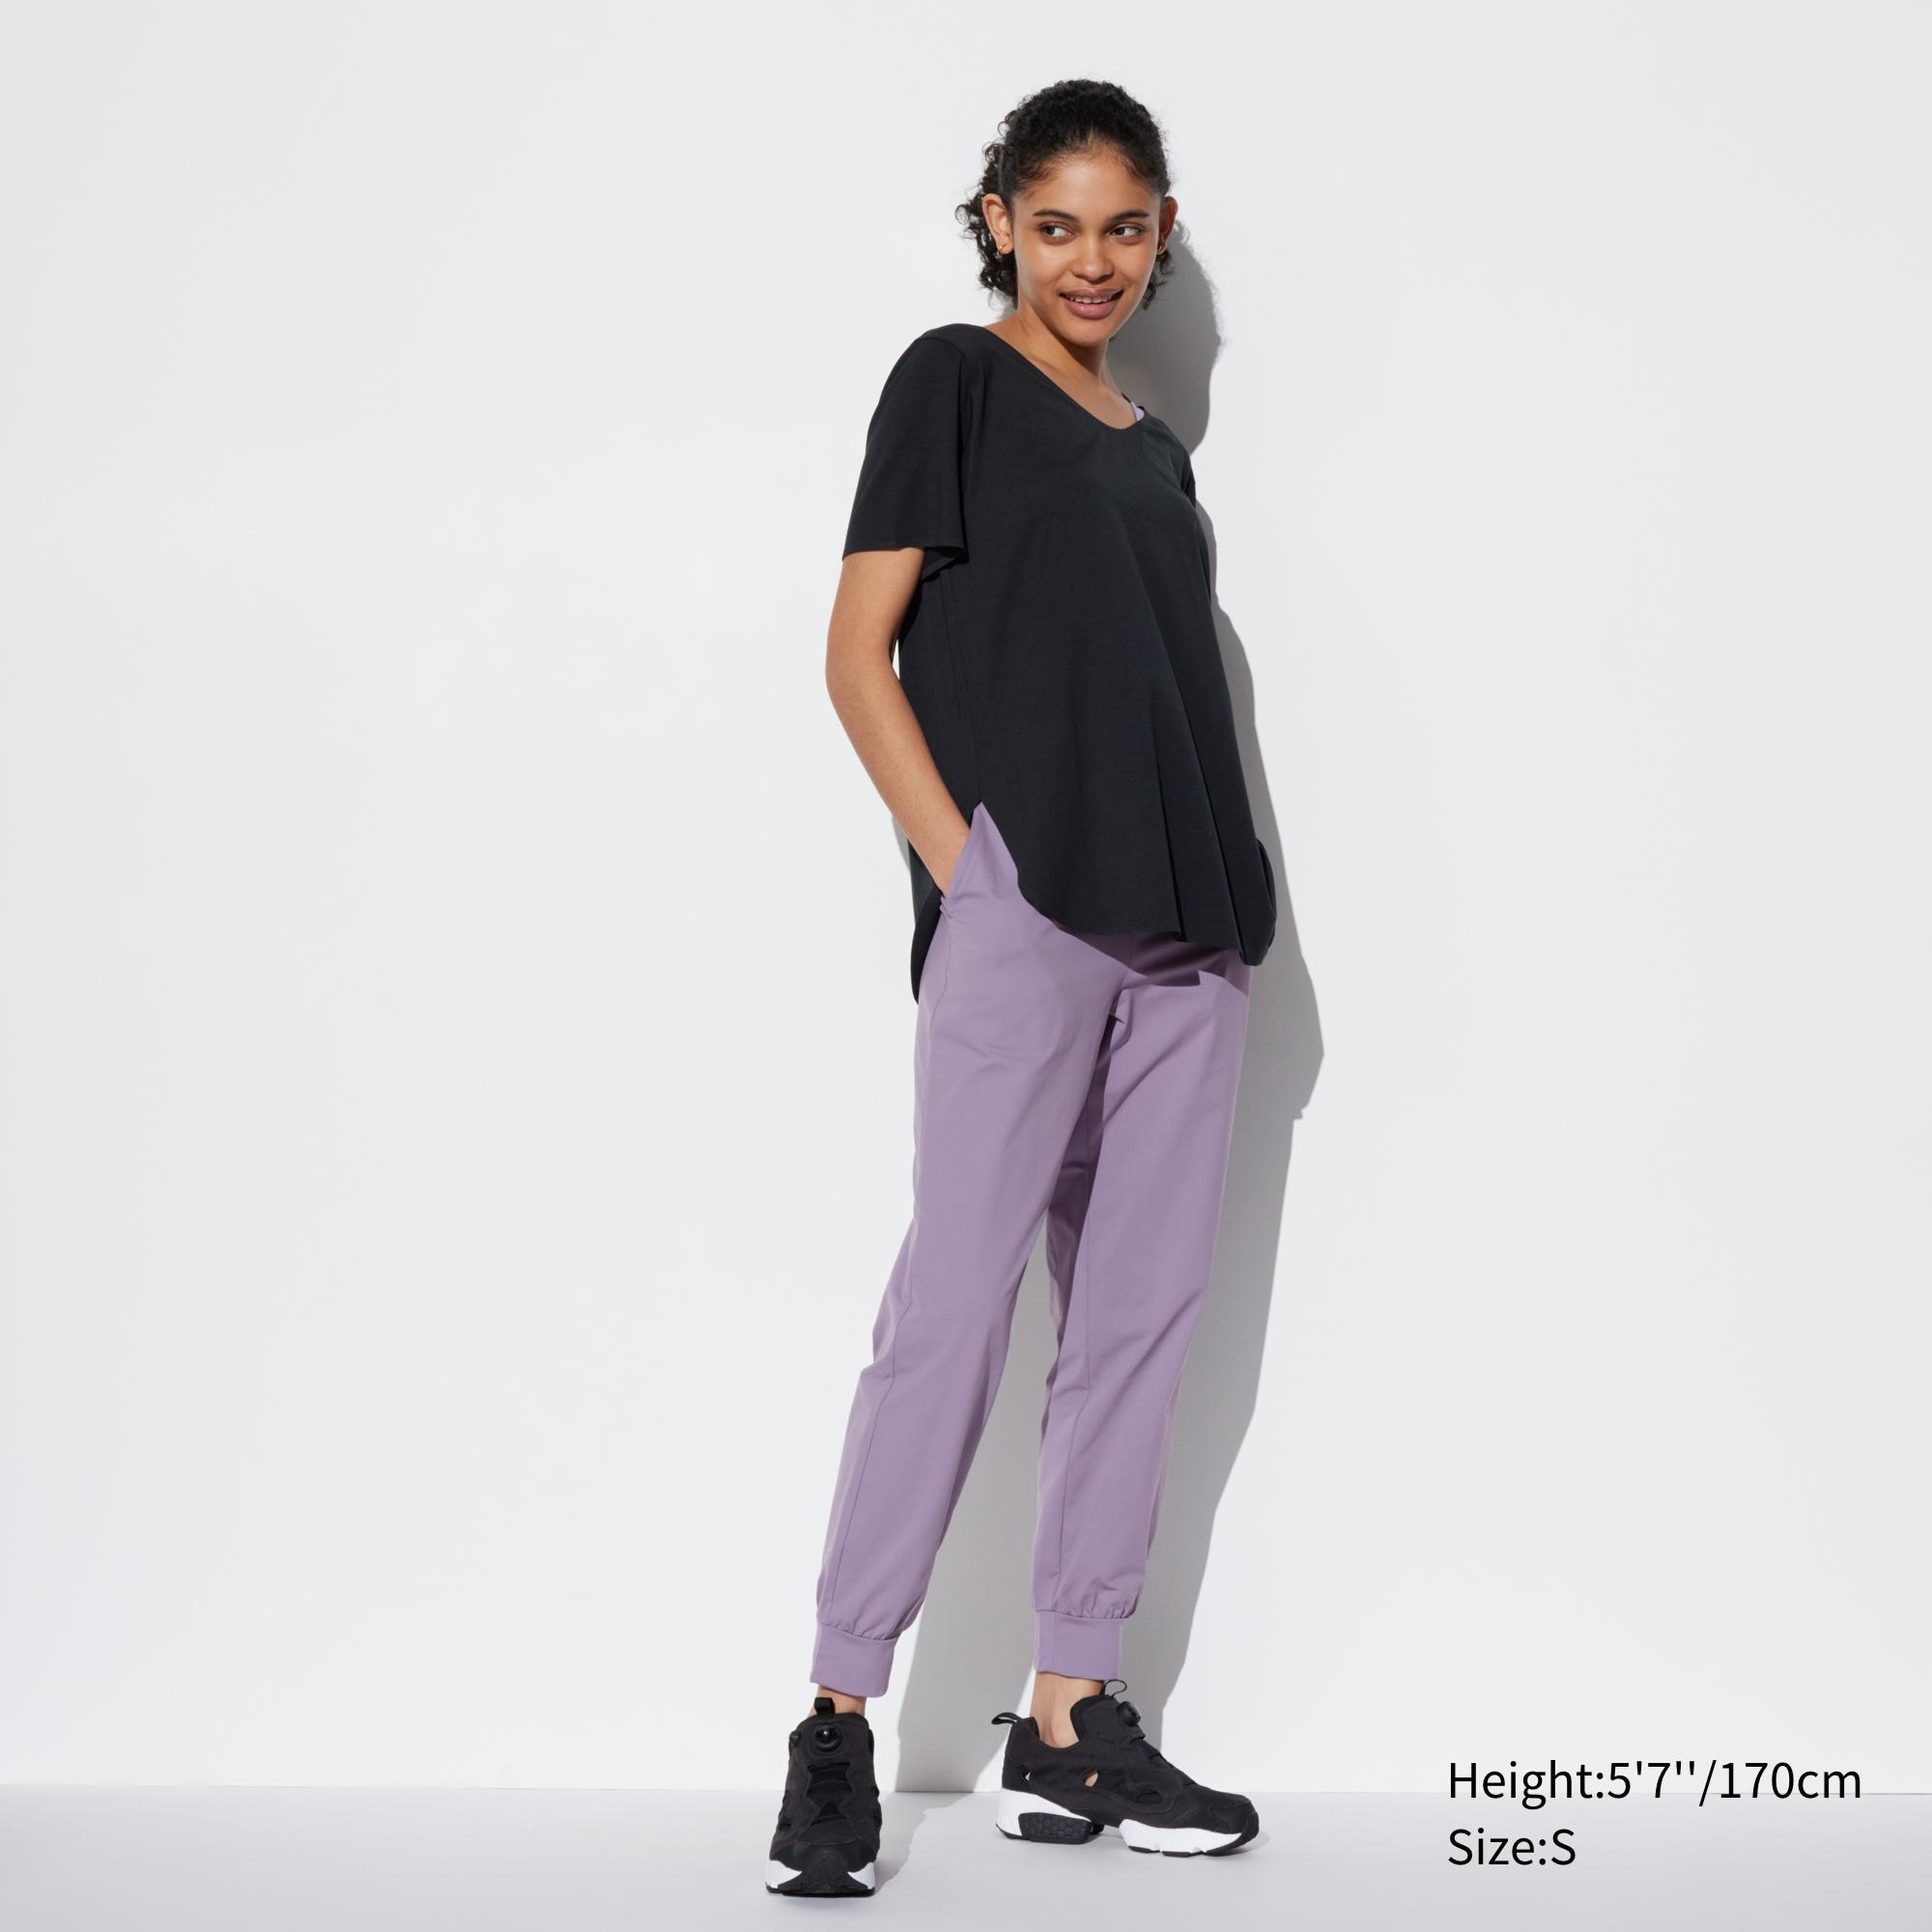 Athletic Works Purple Sweatpants -Really - Depop